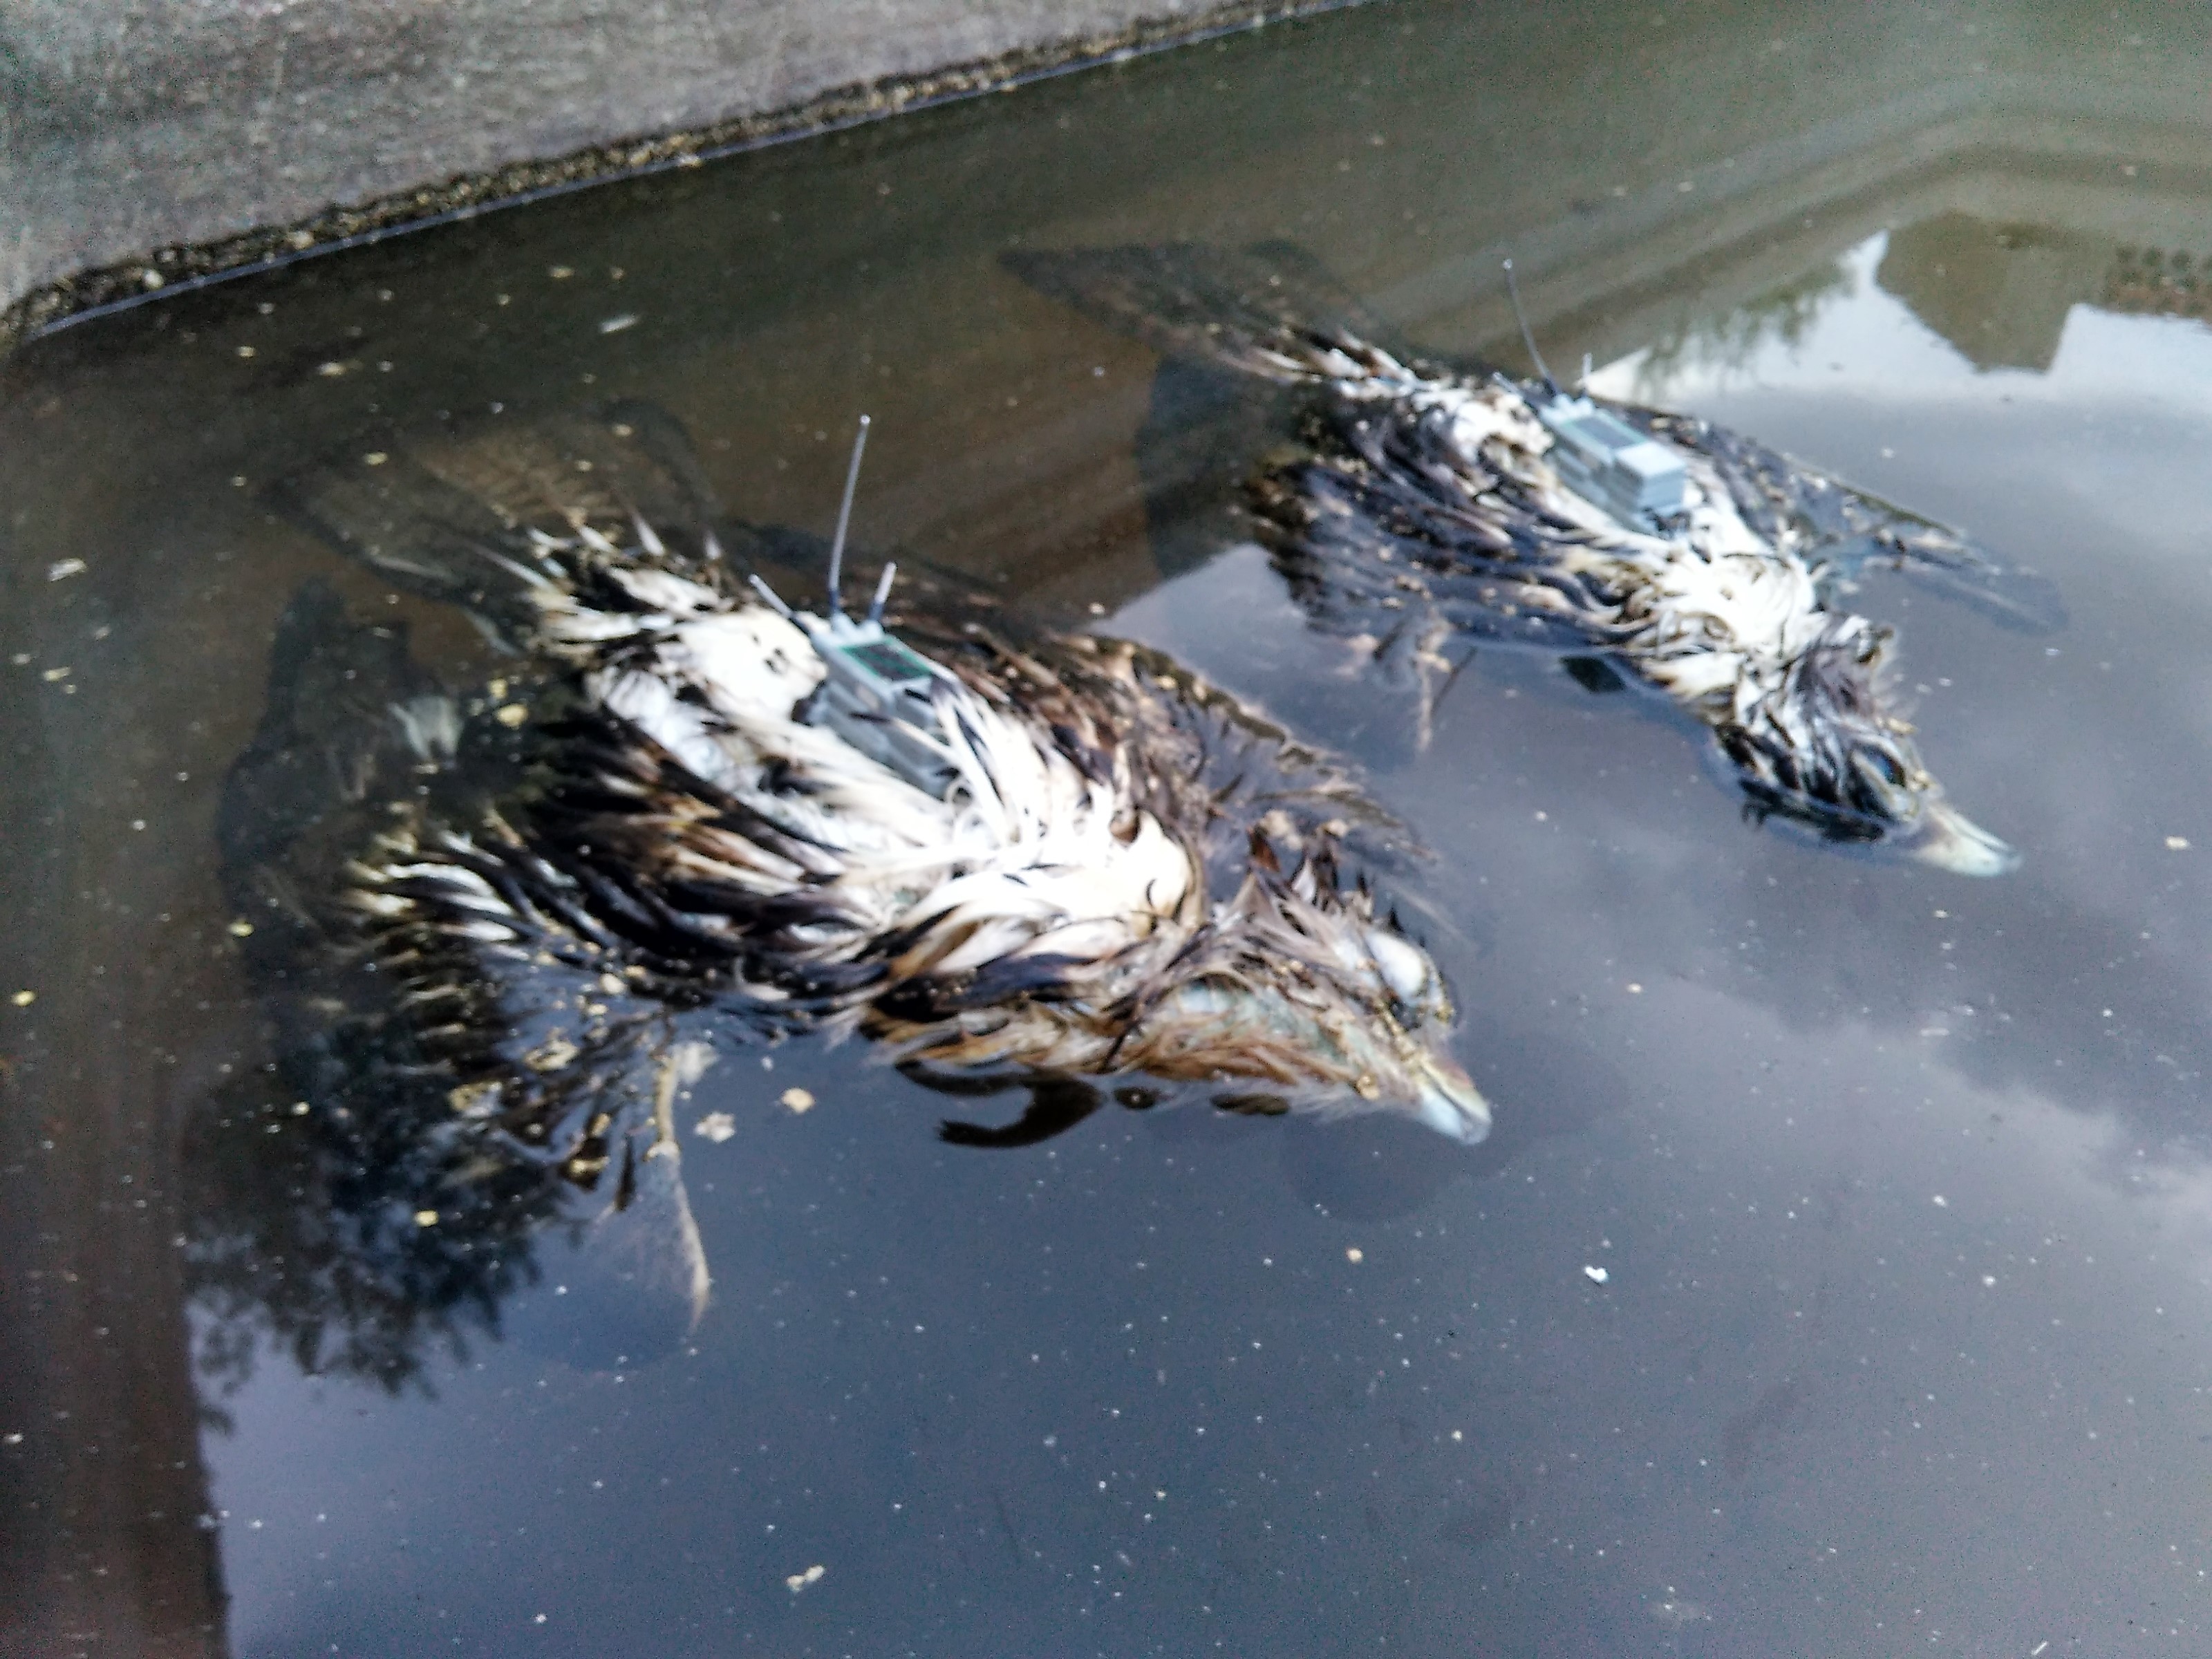 Pareja de águilas perdiceras radiomarcadas que murieron ahogadas en un depósito. Imagen: Adensva